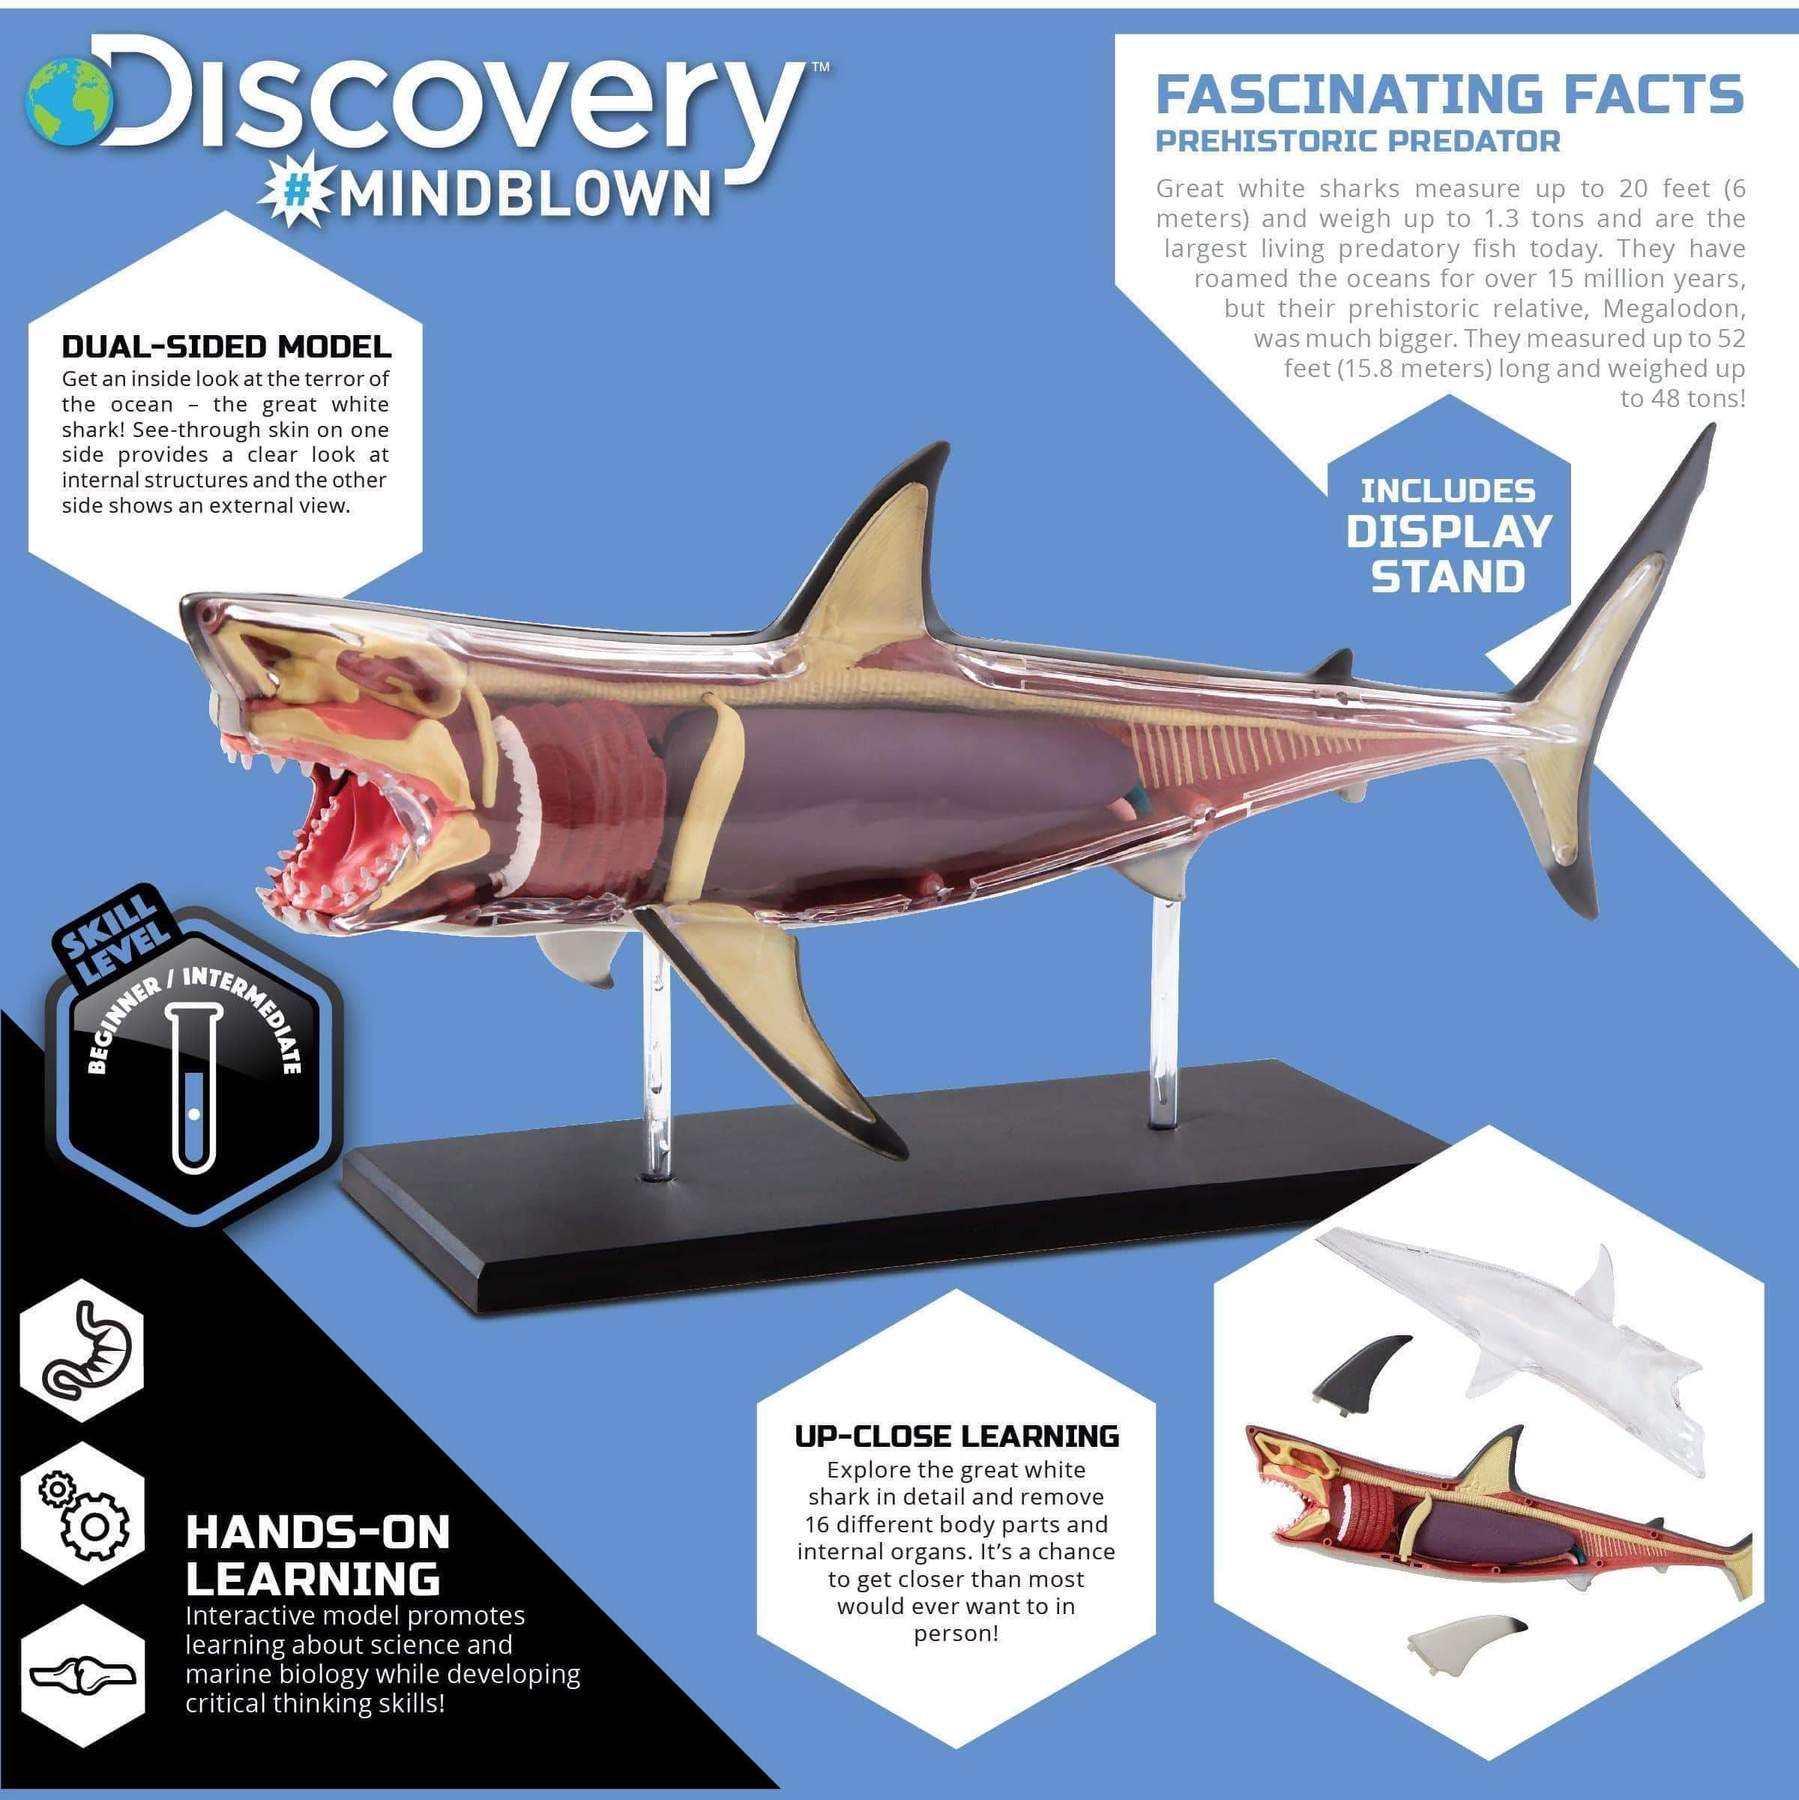 4D Shark Anatomy Kit